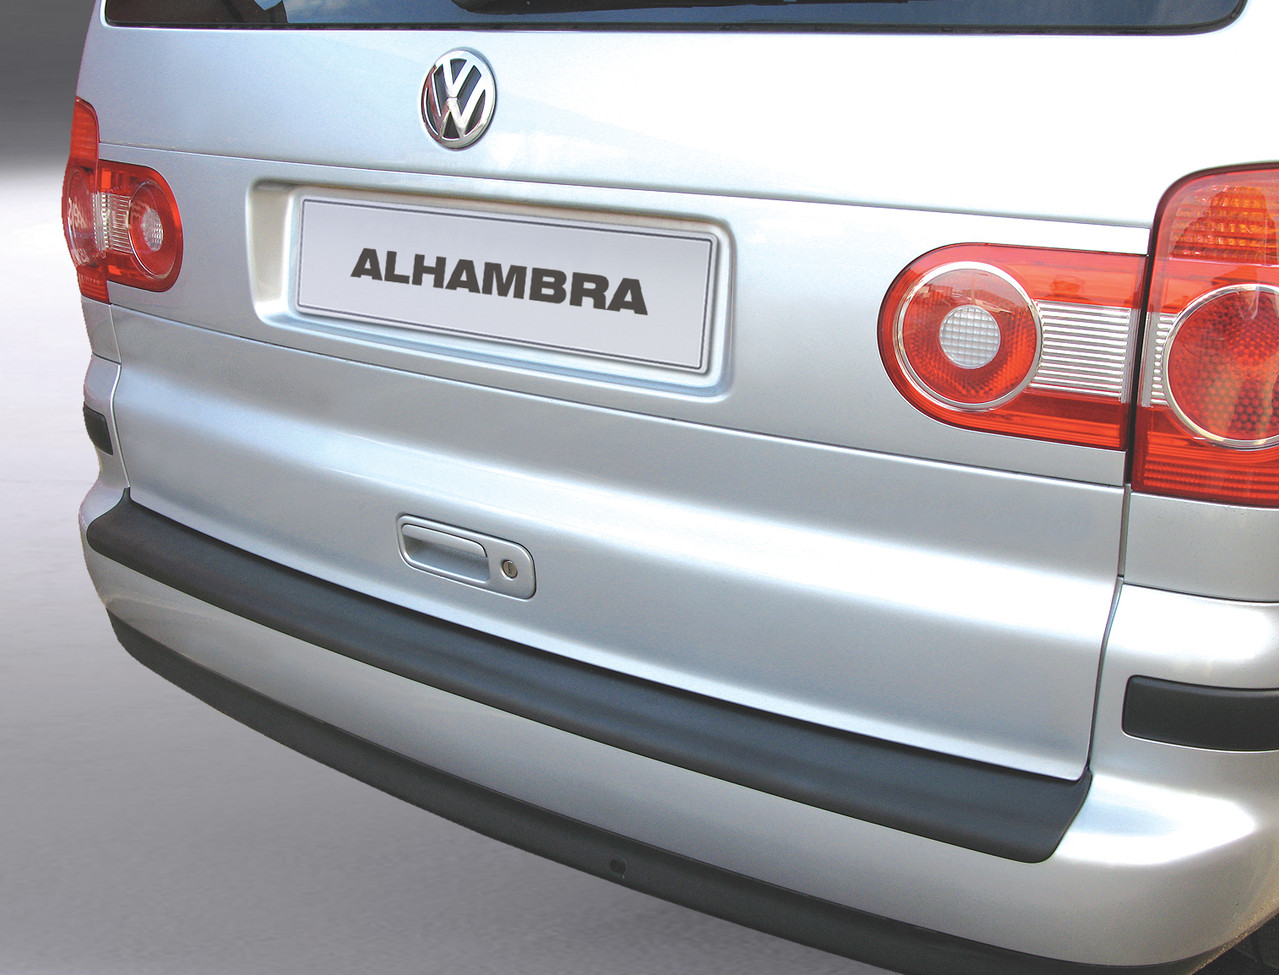 Ladekantenschutz für SEAT ALHAMBRA - Schutz für die Ladekante Ihres  Fahrzeuges